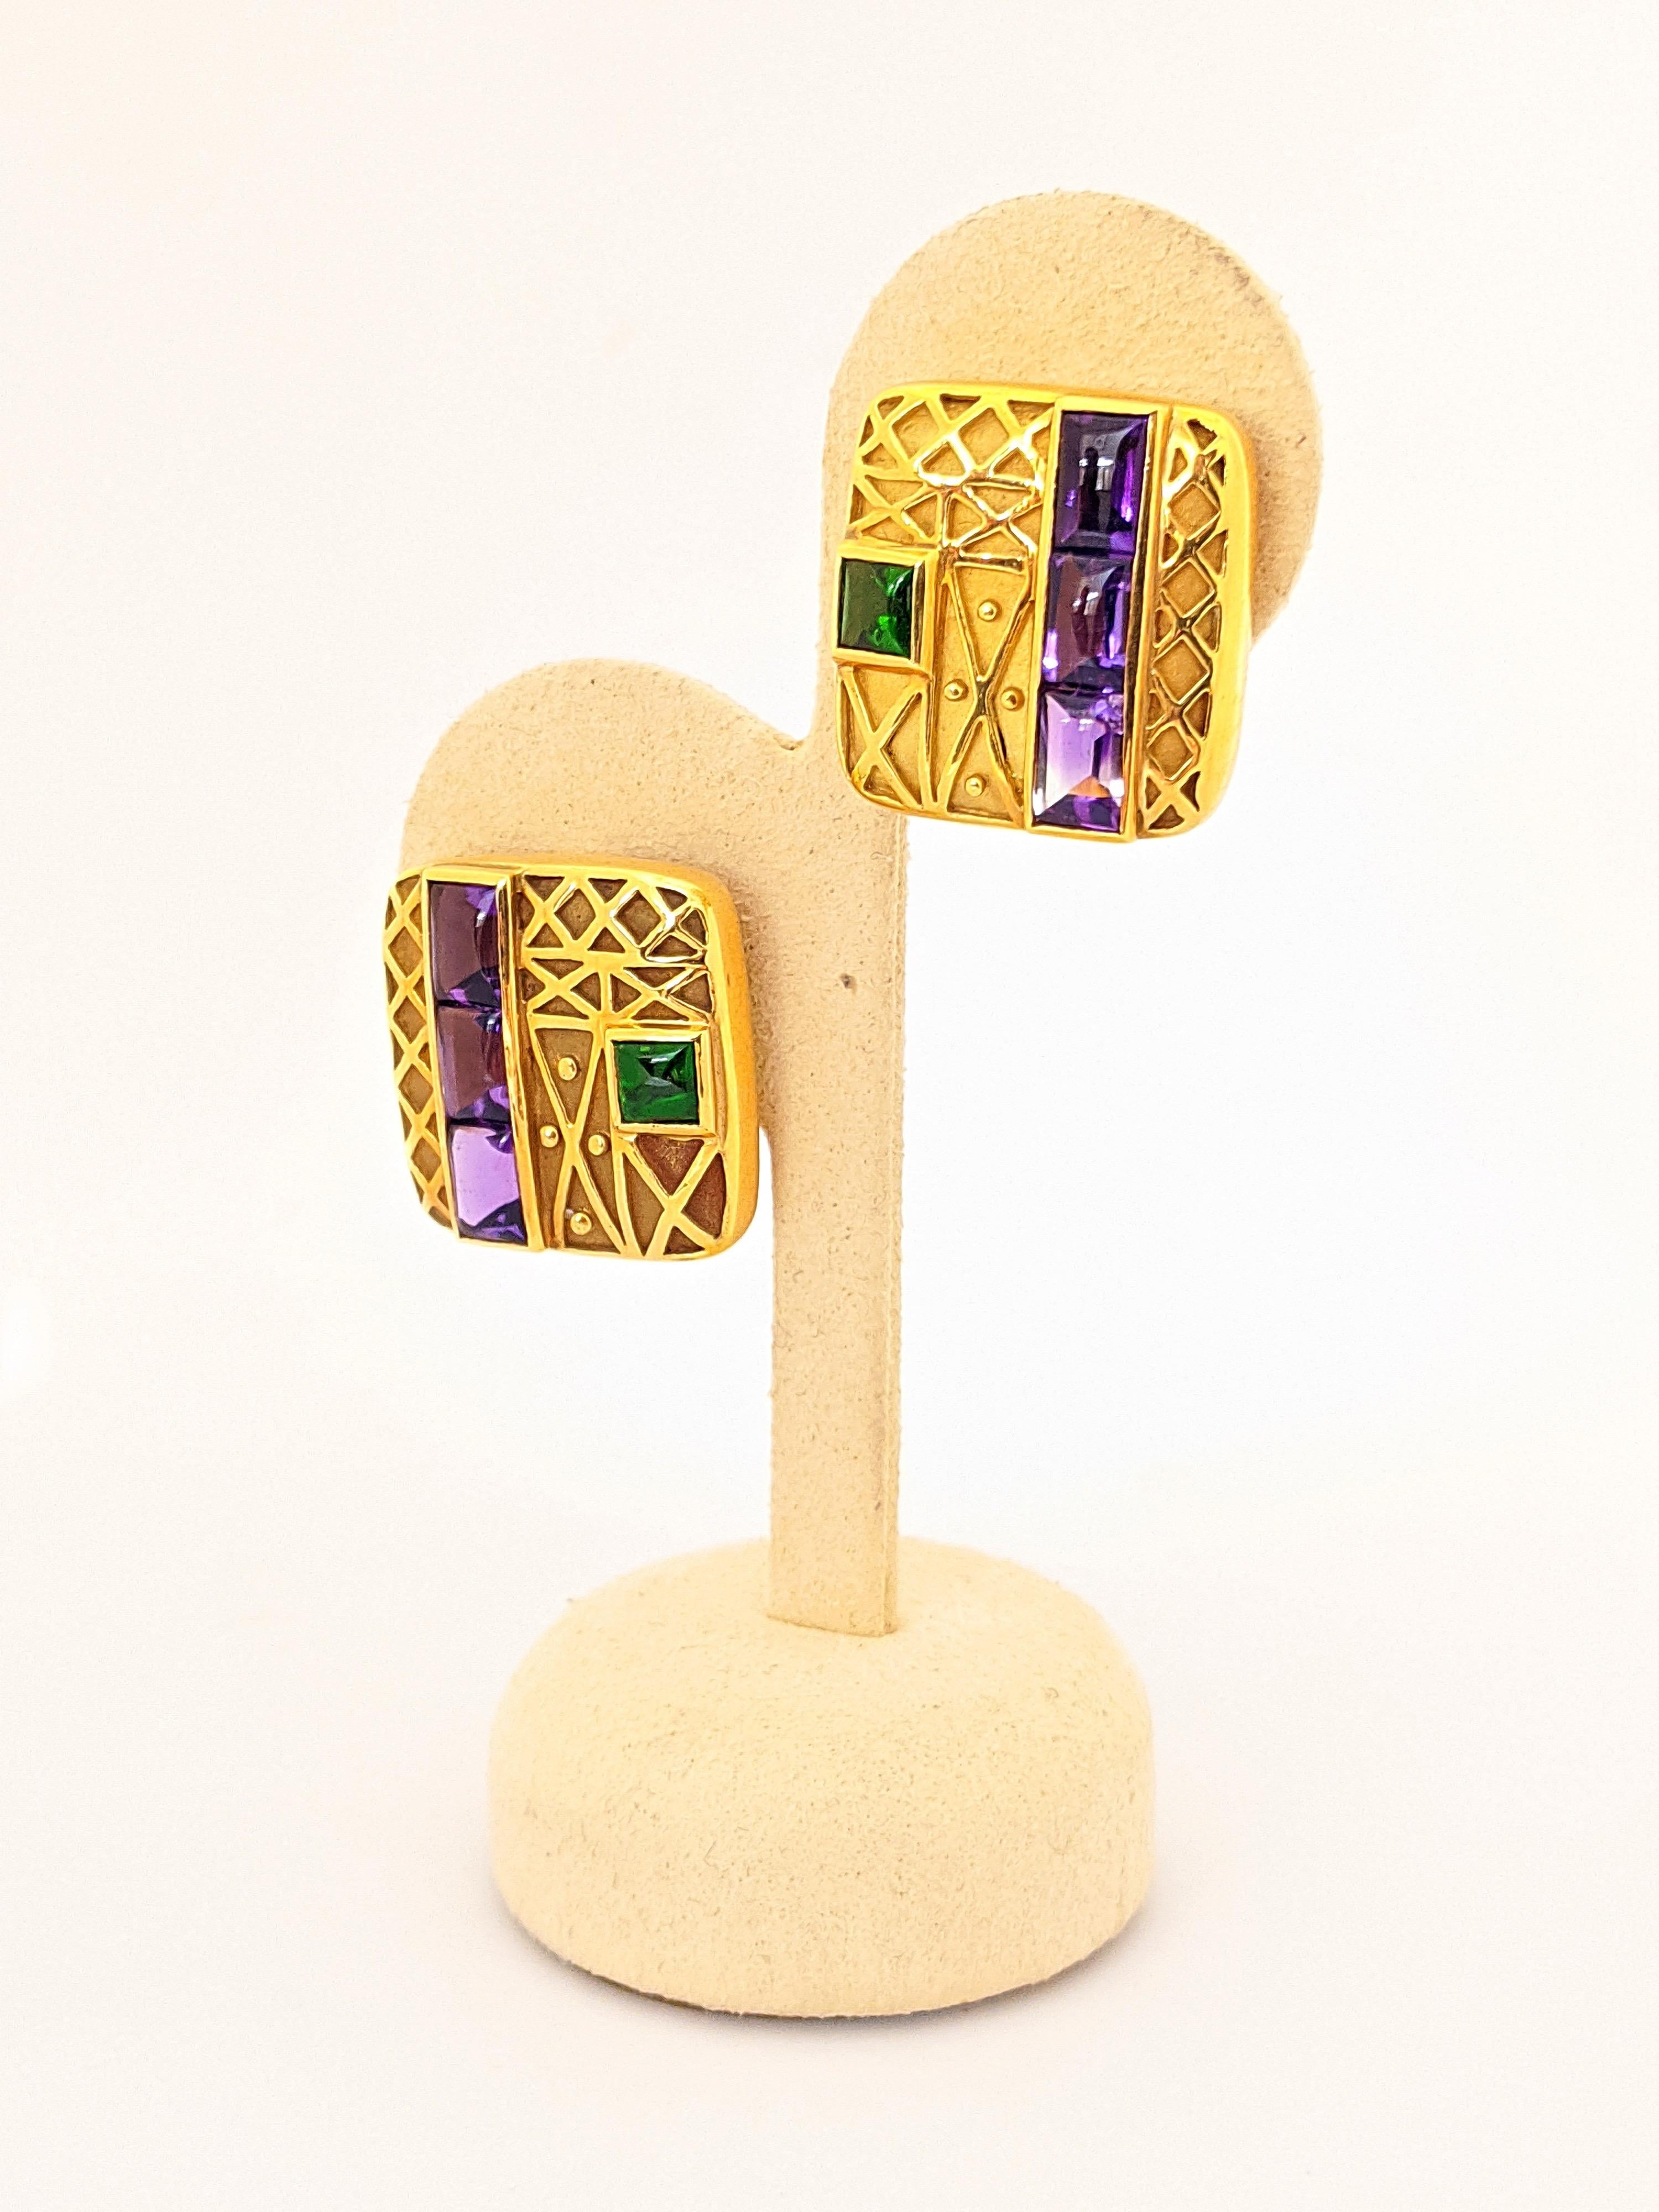 Entworfen von Charles Turi für Cellini.  Diese quadratischen Ohrringe sind aus 18 Karat Gelbgold gefertigt. Sie haben eine matte Oberfläche mit polierten, geometrisch geformten Details. Jeder Ohrring ist mit einem zuckerhutförmigen Cabachon-Amethyst